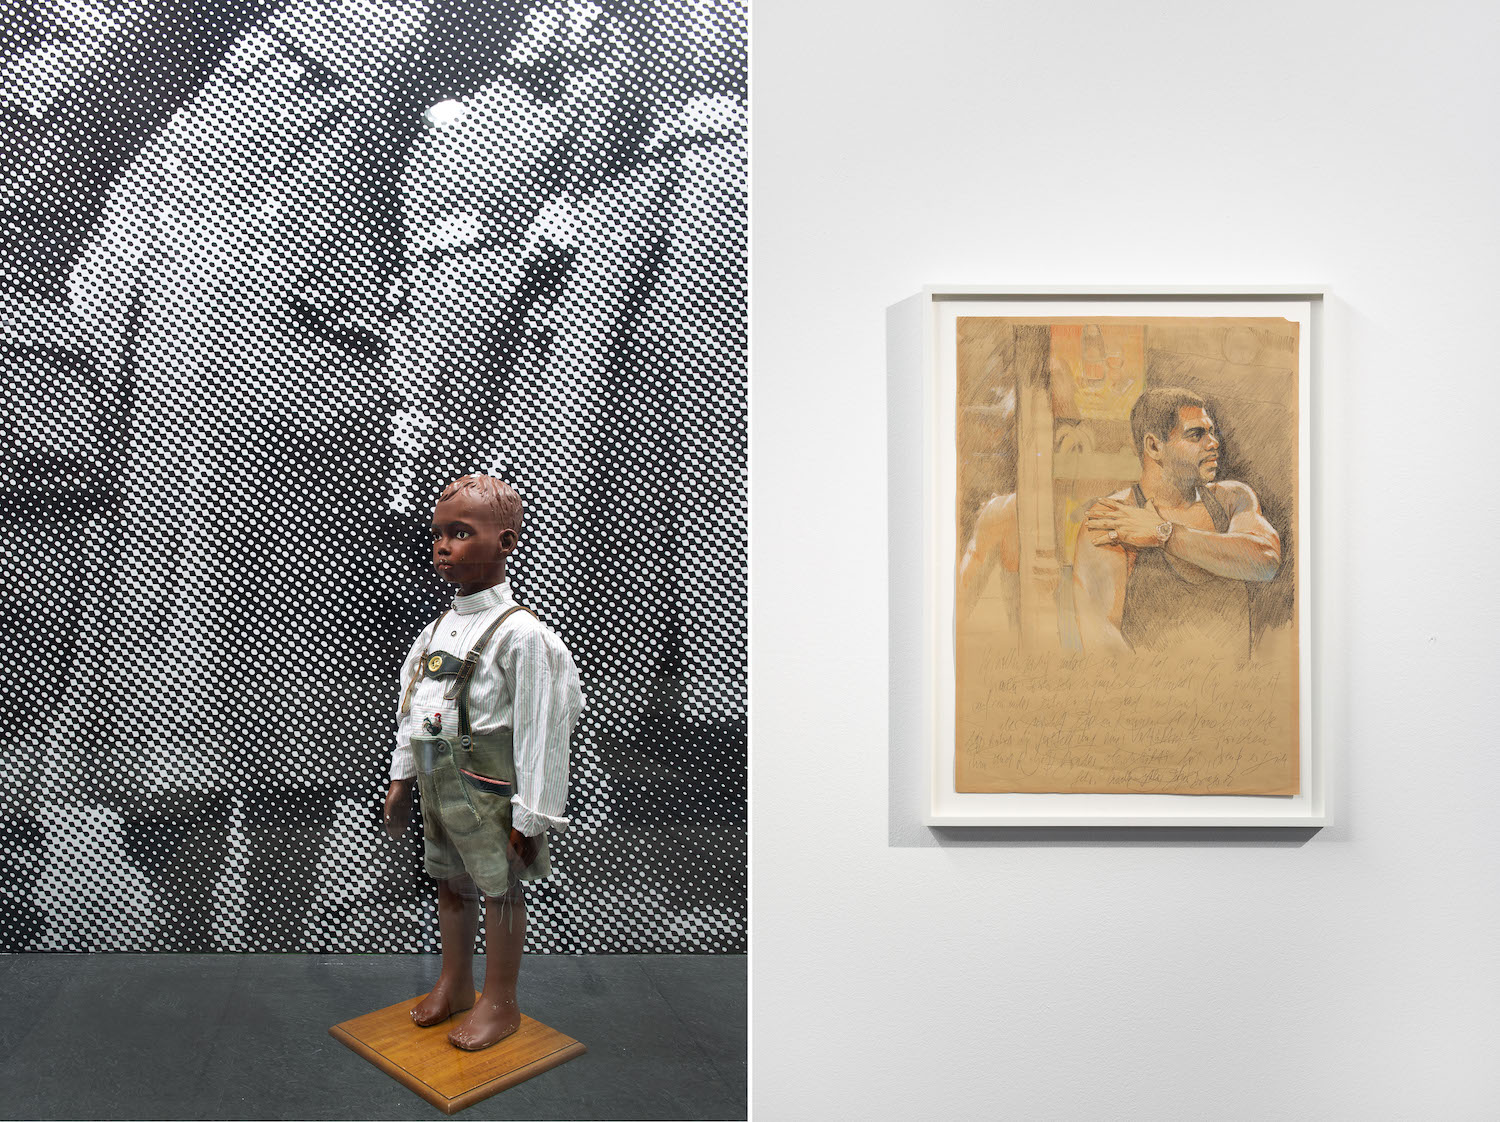 Links: Plastikpuppe eines kleinen Schwarzen Jungens ins Lederhosel, rechts eine Zeichnung eines Mannes.